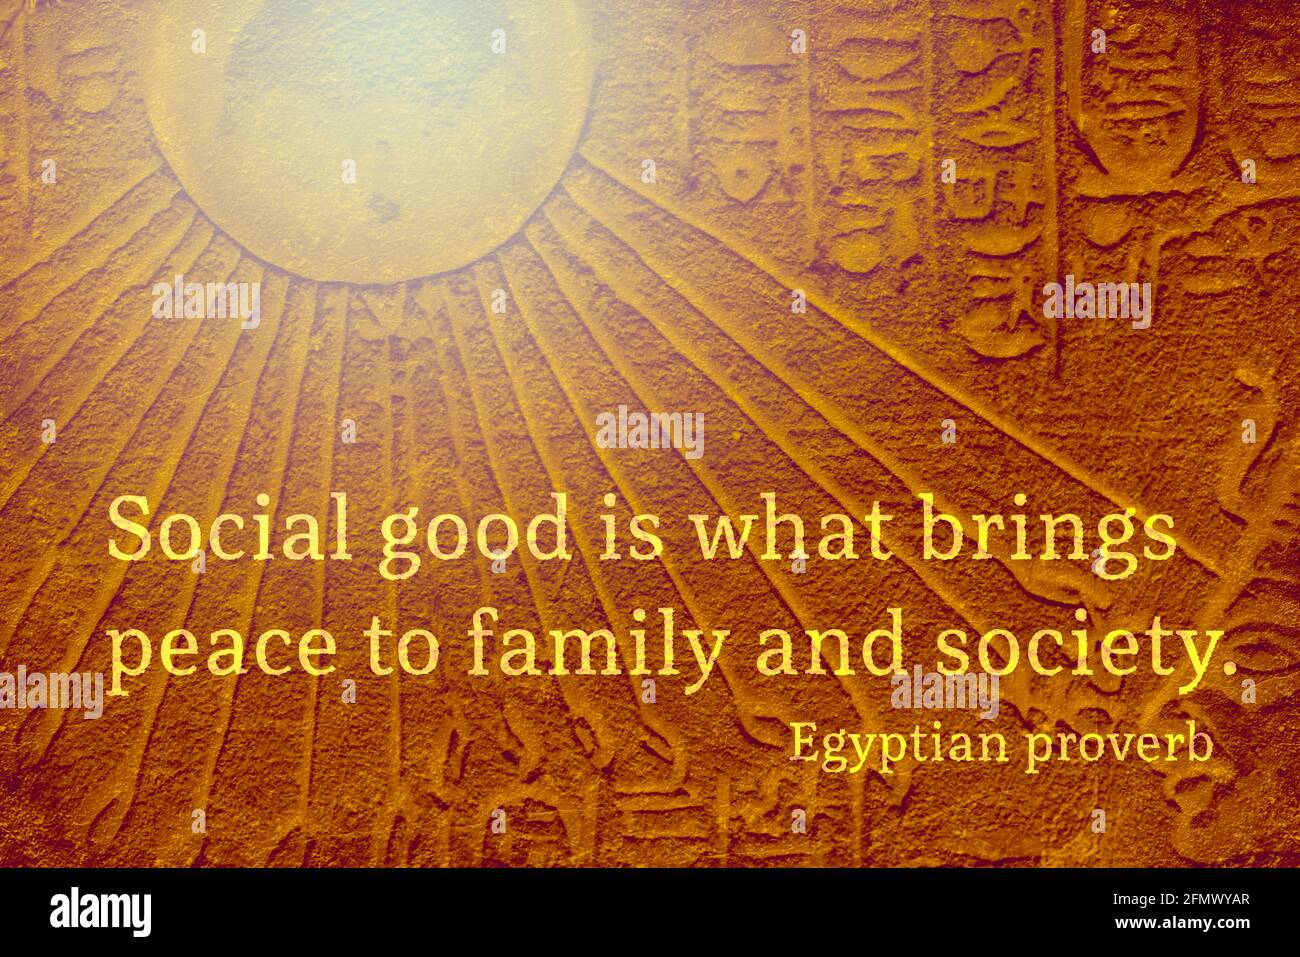 Das soziale wohl ist es, was Familie und Gesellschaft Frieden bringt - Ancient Egyptian Sprichwort Stockfoto